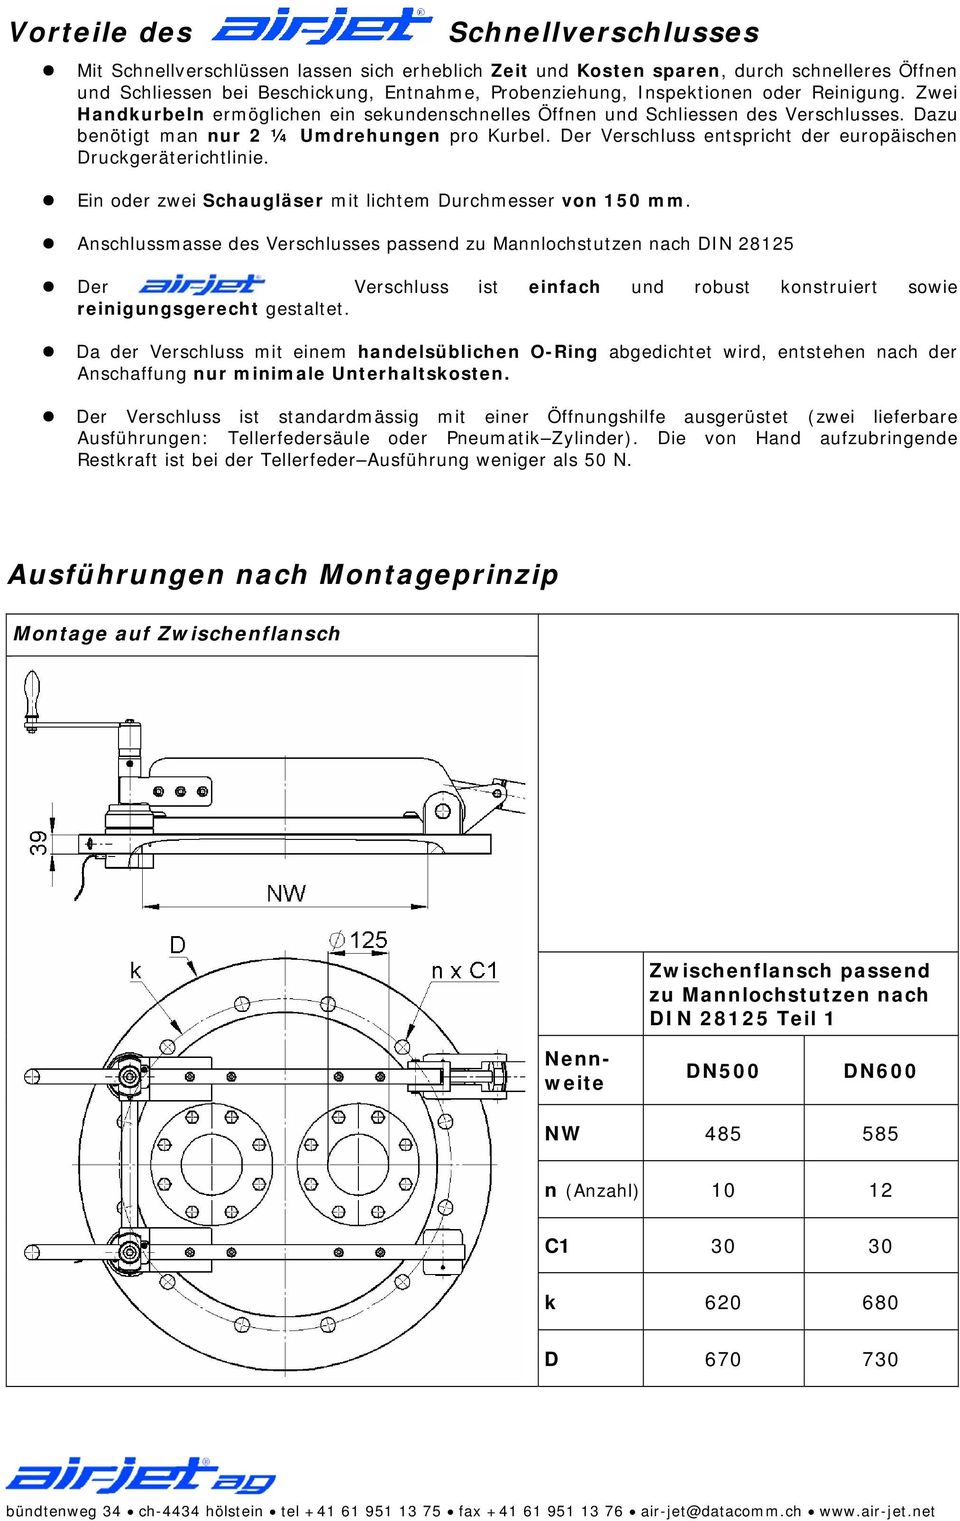 Der Verschluss entspricht der europäischen Druckgeräterichtlinie. Ein oder zwei Schaugläser mit lichtem Durchmesser von 150 mm.